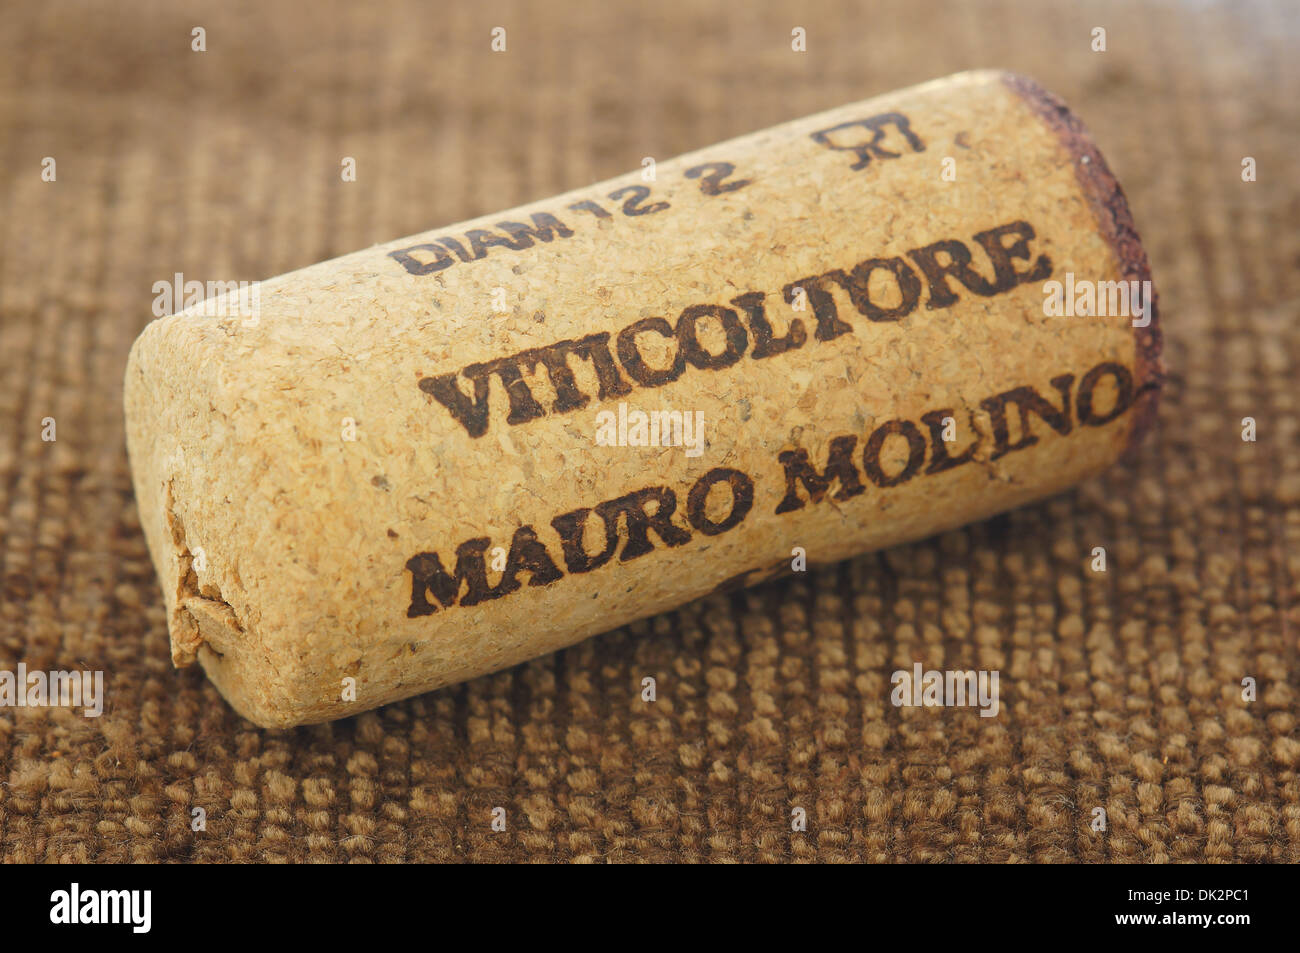 Mauro Molino winemaker Italian winemaker Piemonte wine cork stopper Stock Photo